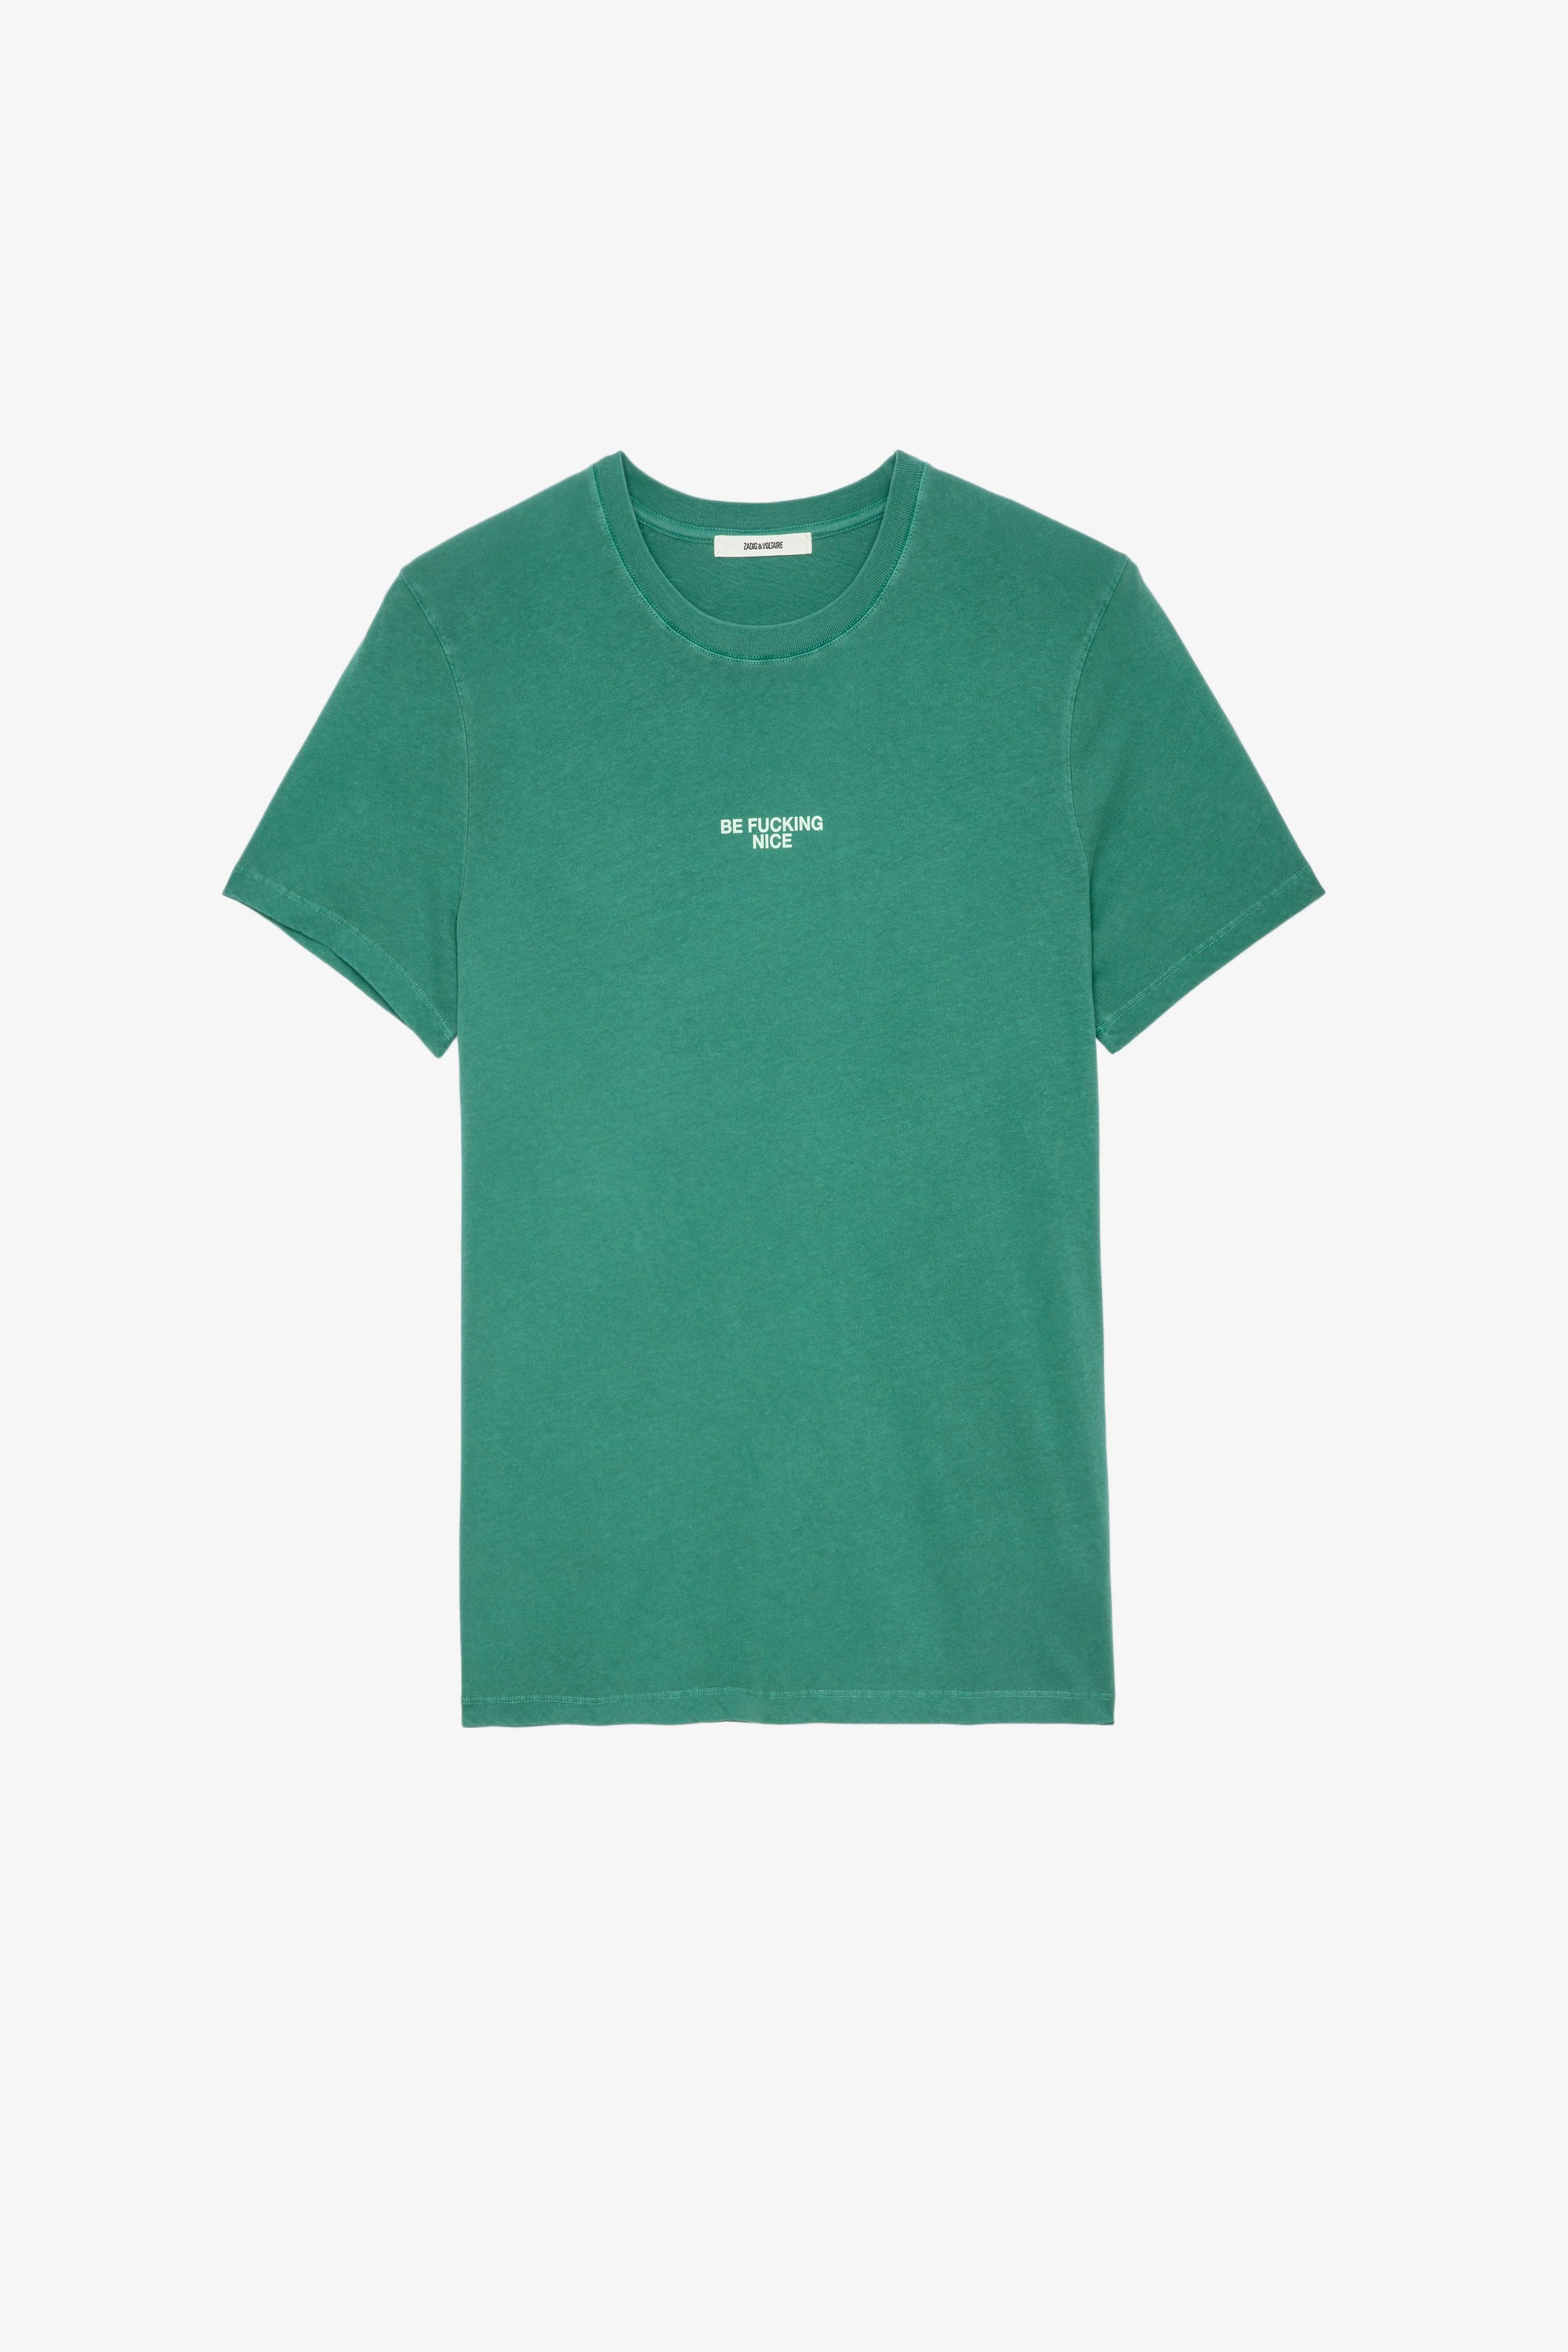 T-Shirt Ted Herren-T-Shirt aus grüner Baumwolle mit Aufschrift „Be fucking nice“